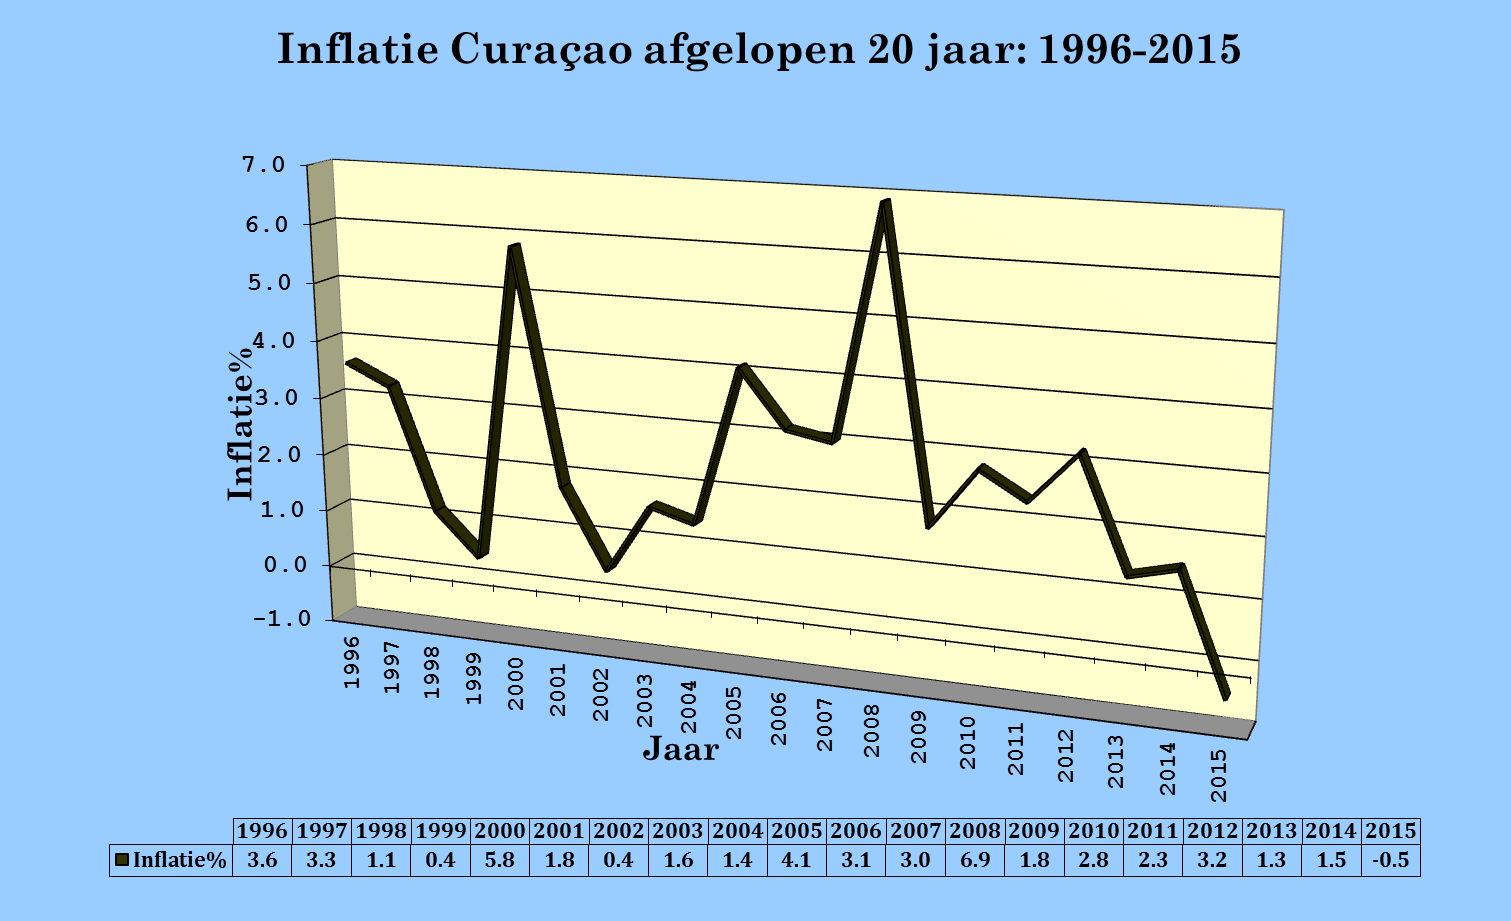 Inflatie op Curaçao gedurende de afgelopen 20 jaar (1996-2015) Over de afgelopen 20 jaar (1996-2015) vertoont de inflatie op Curaçao een sterk schommelend beeld, varierend van -0,5 procent (in 2015)